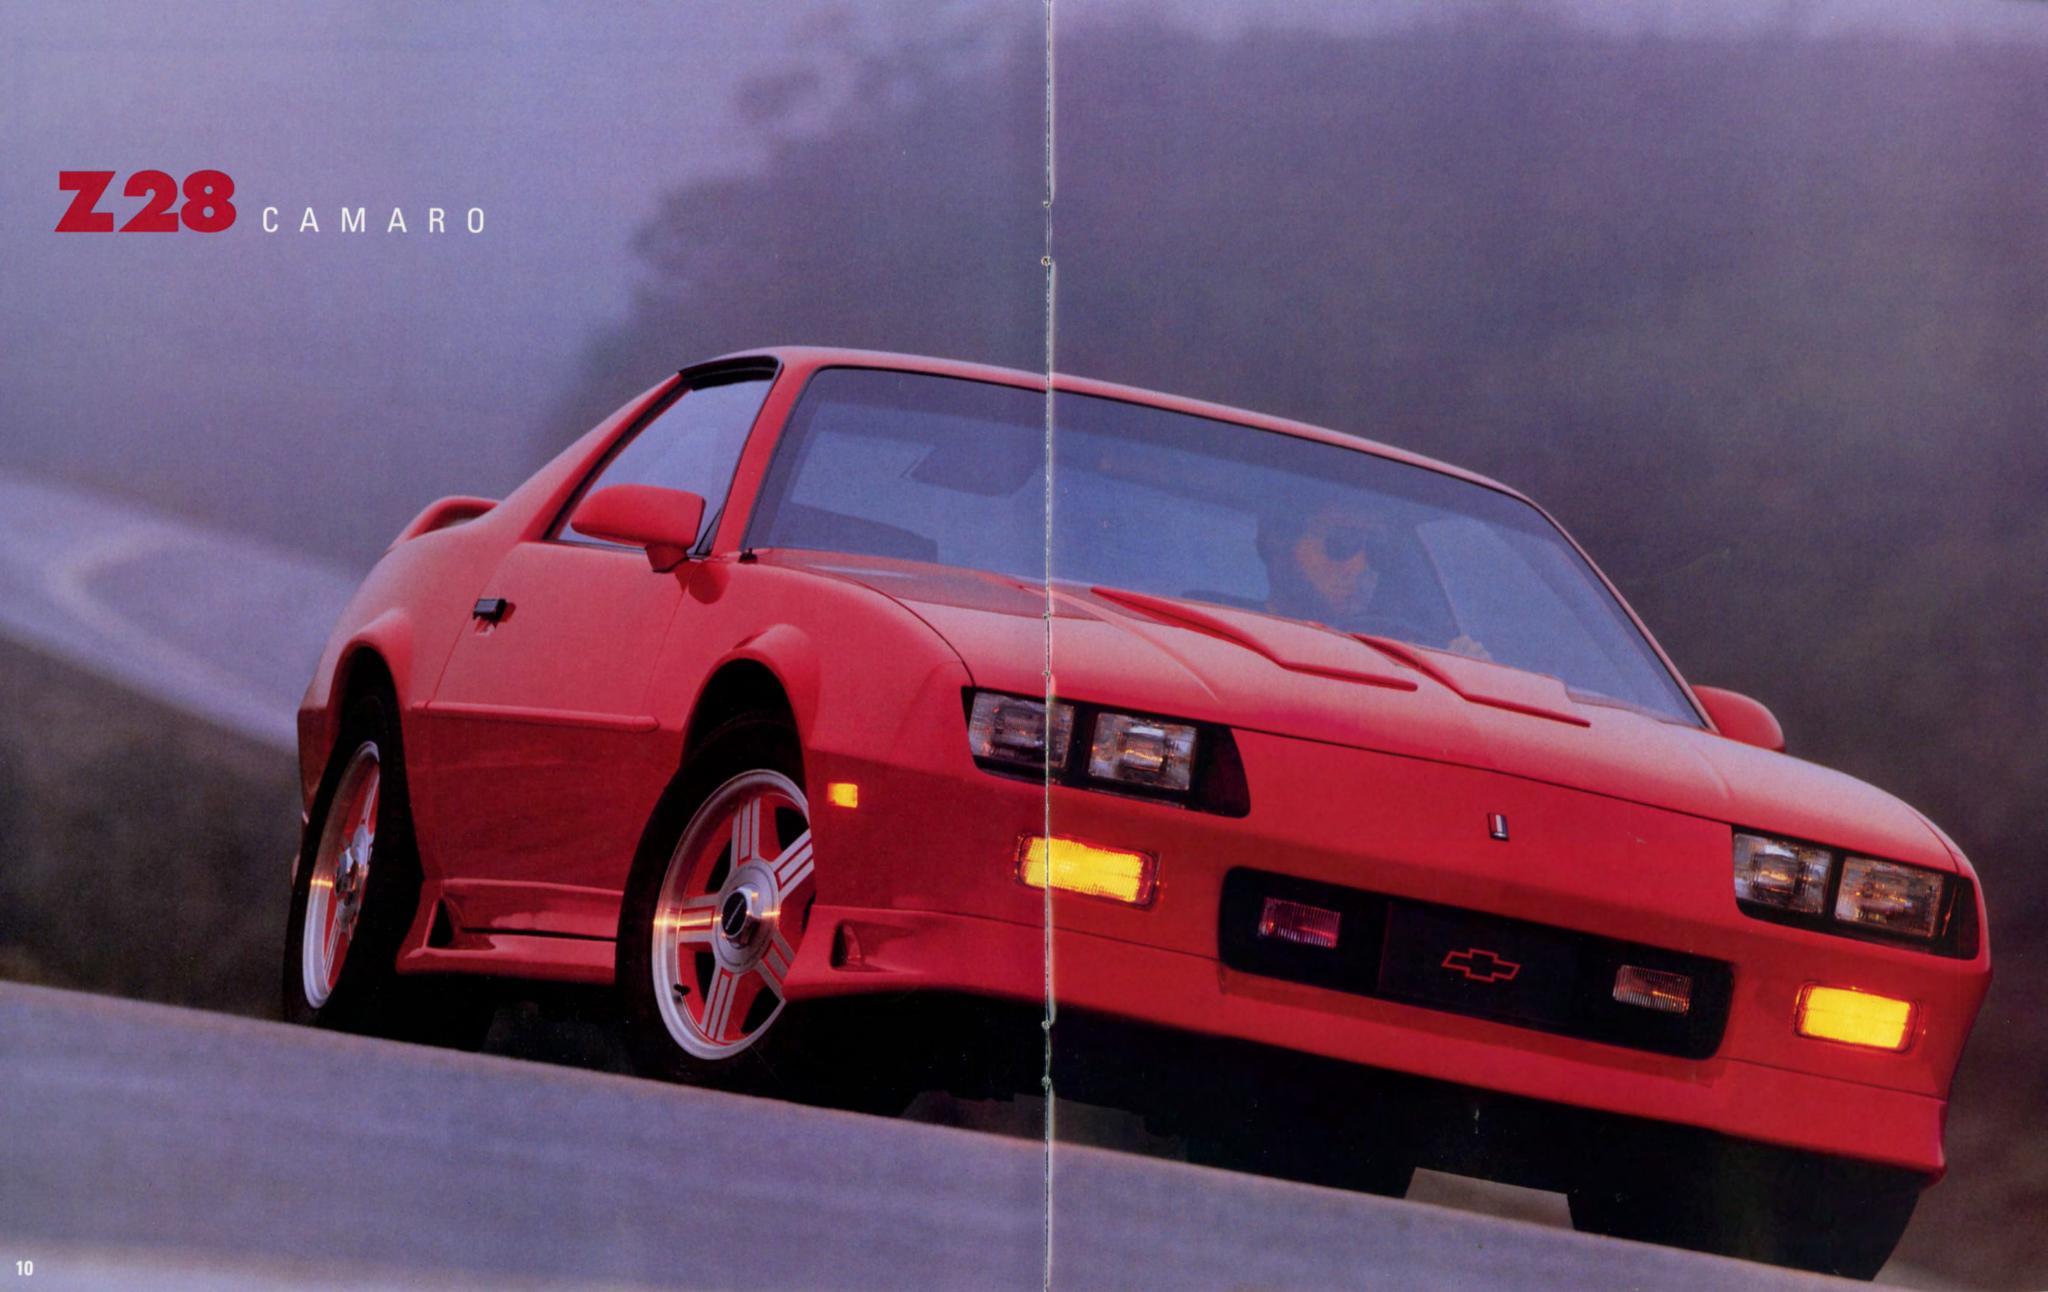 1991 Camaro Brochure